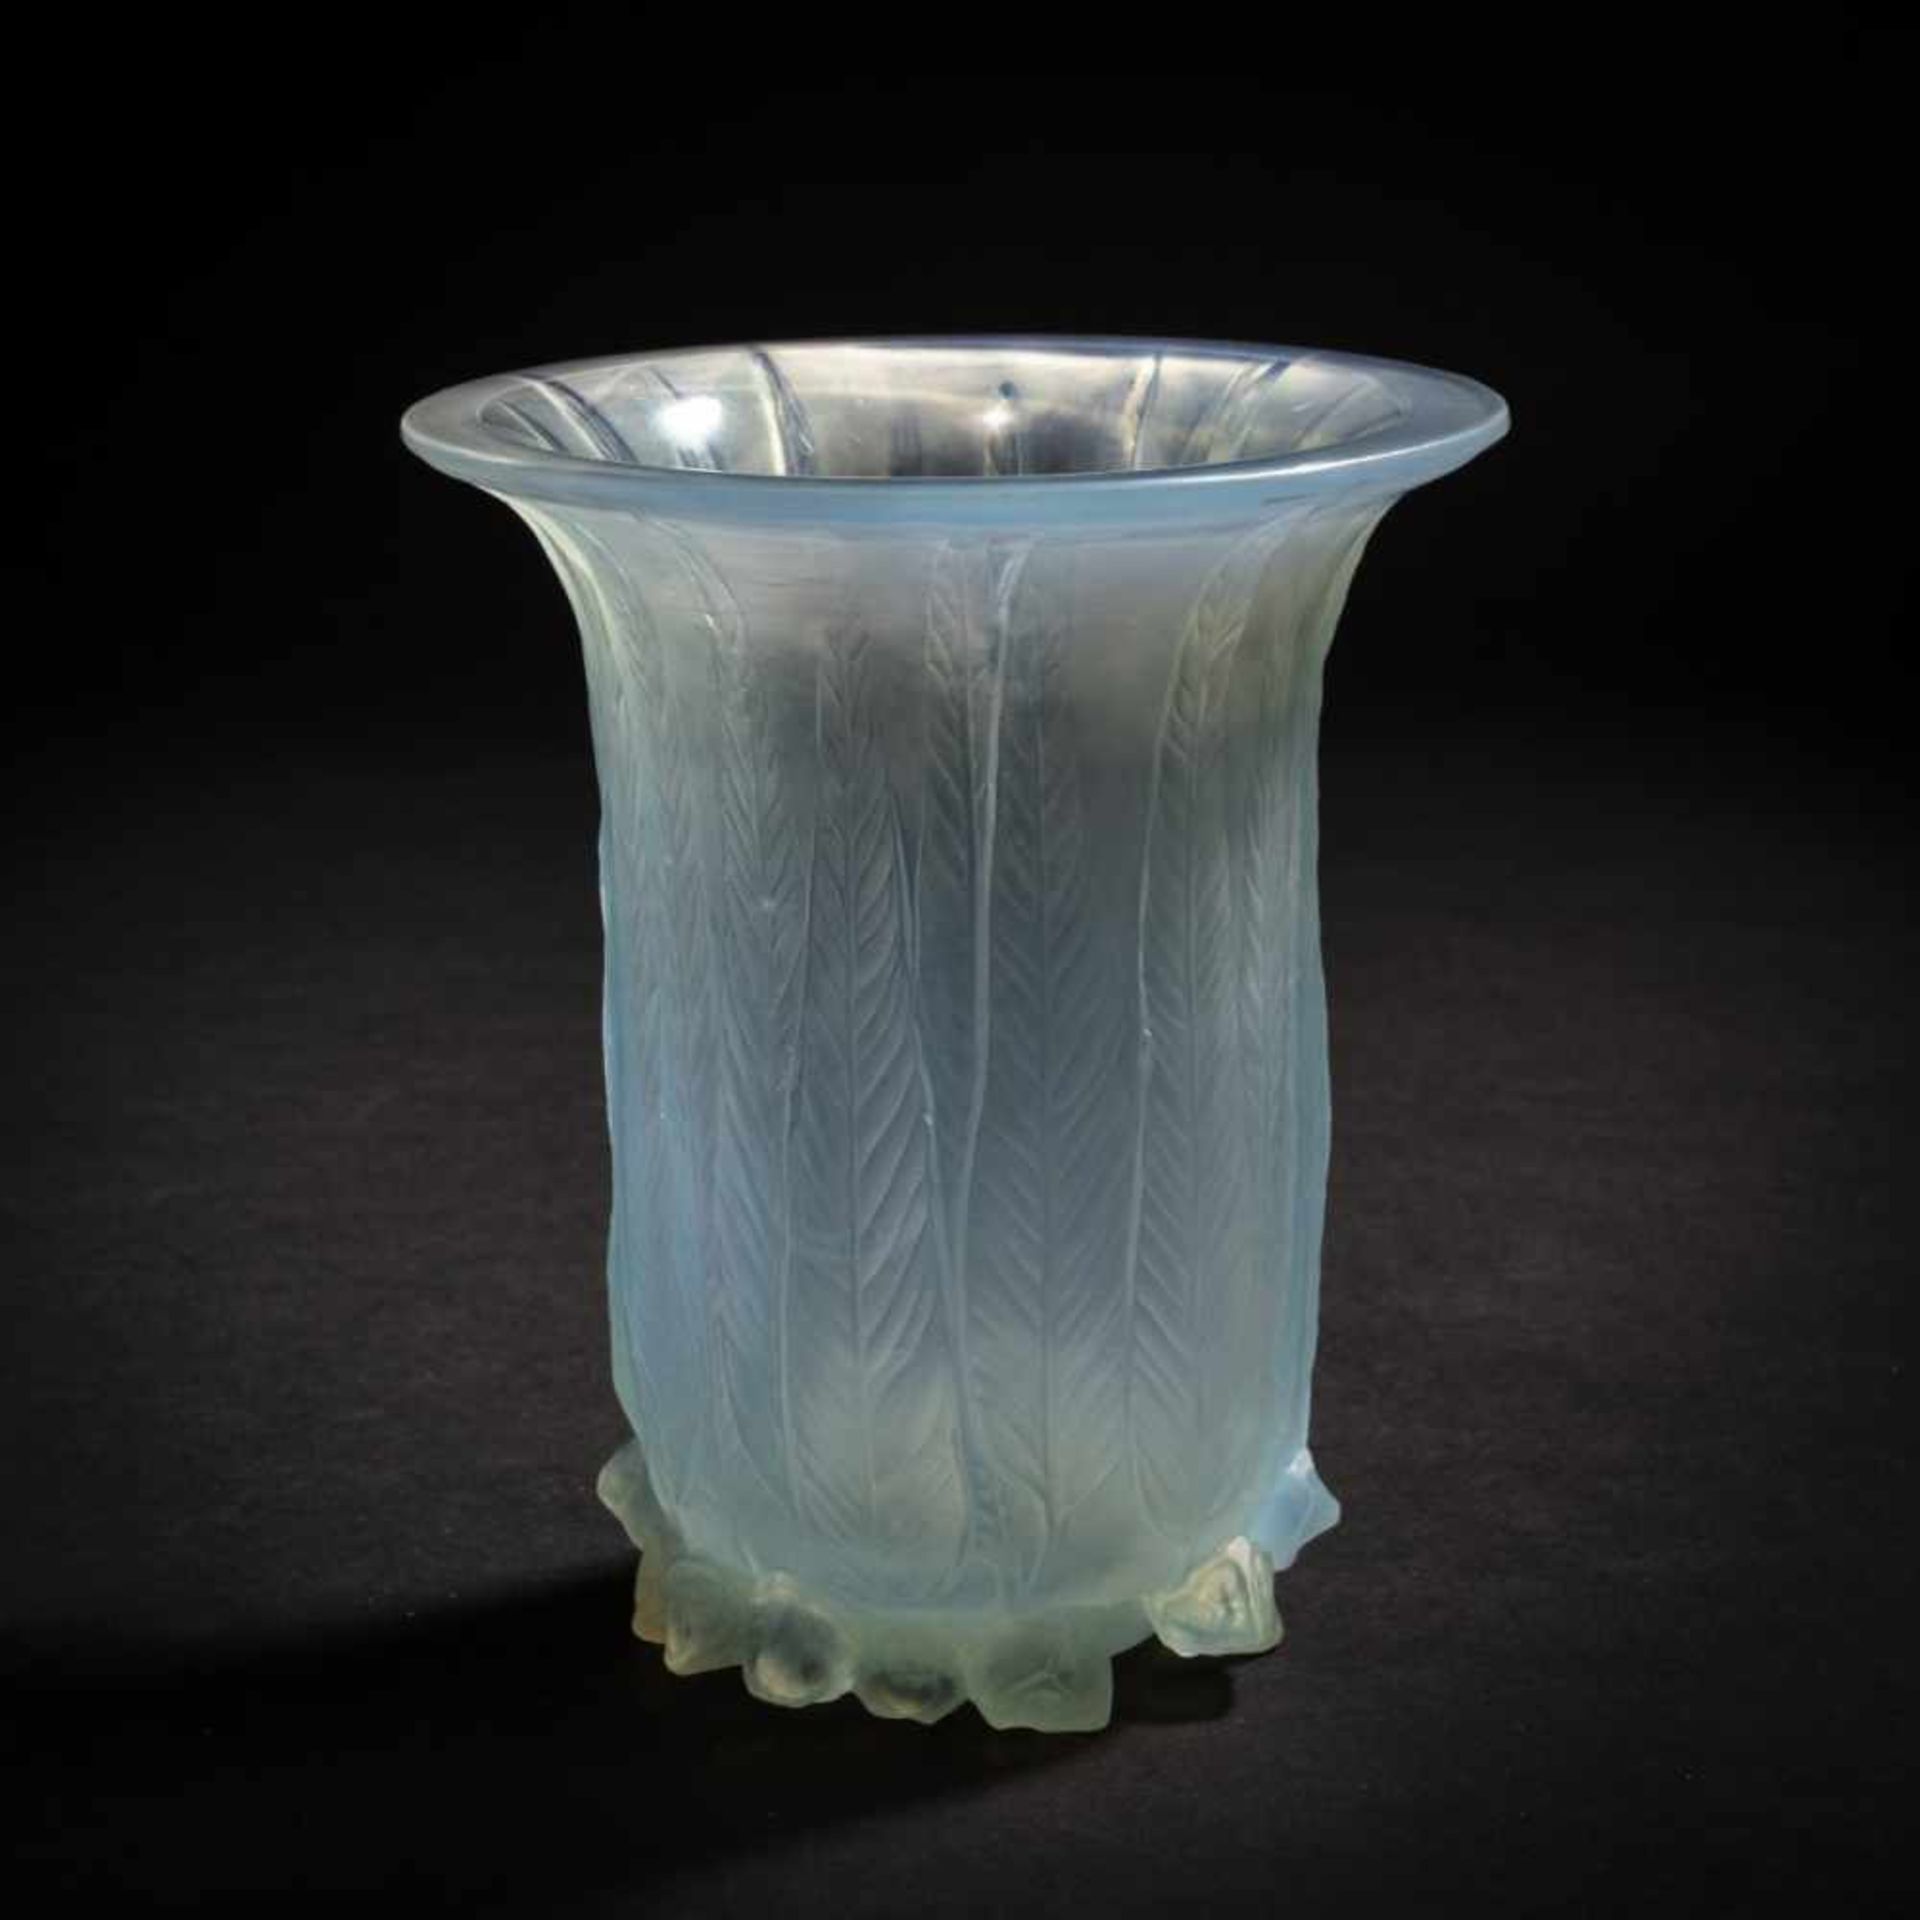 René Lalique, 'Eucalyptus' vase, 1925'Eucalyptus' vase, 1925H. 16.3 cm. Clear, moulded glass,